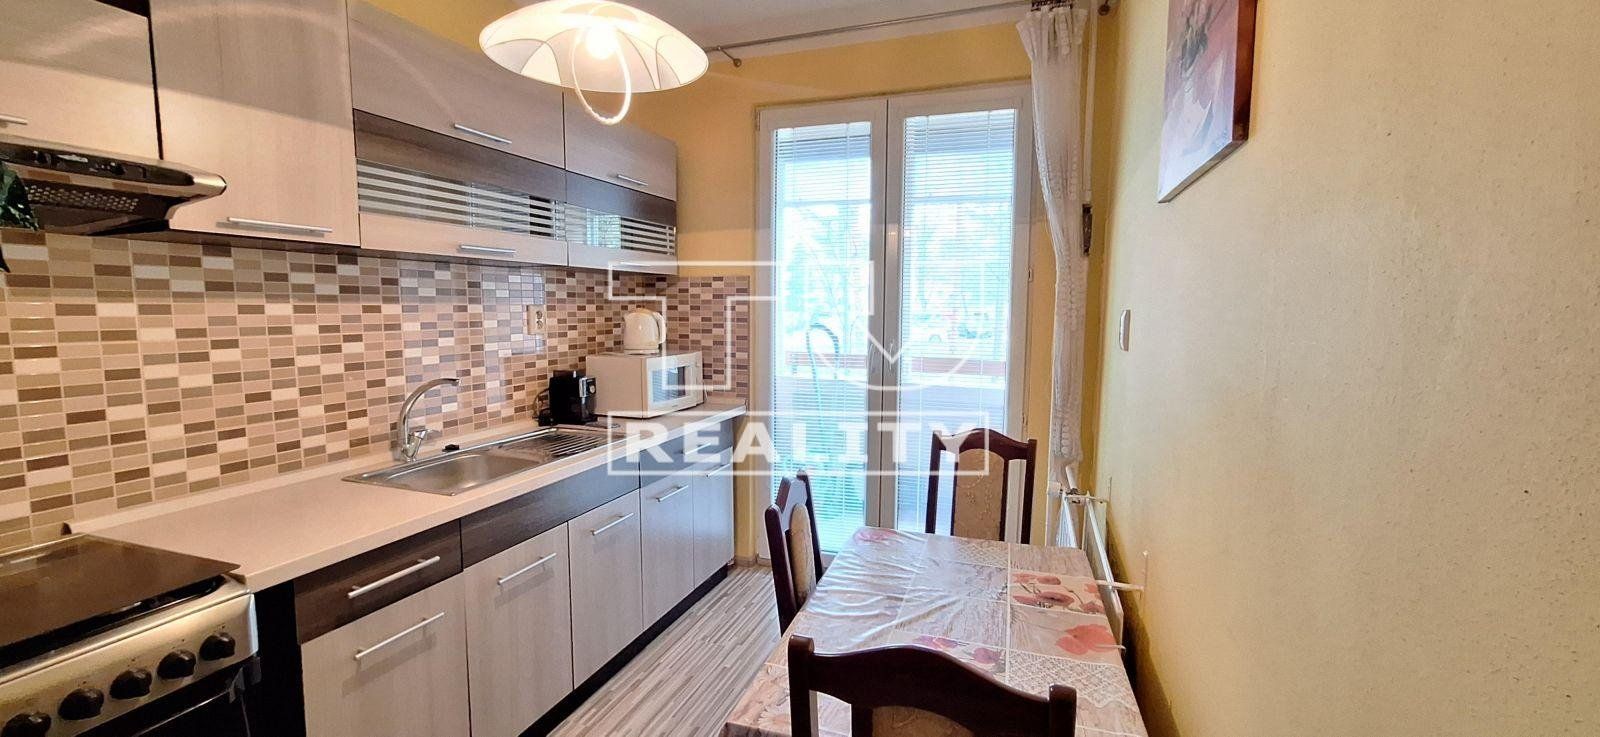 TUreality ponúka na predaj 2 izbový byt v meste Kremnica, 50 m2